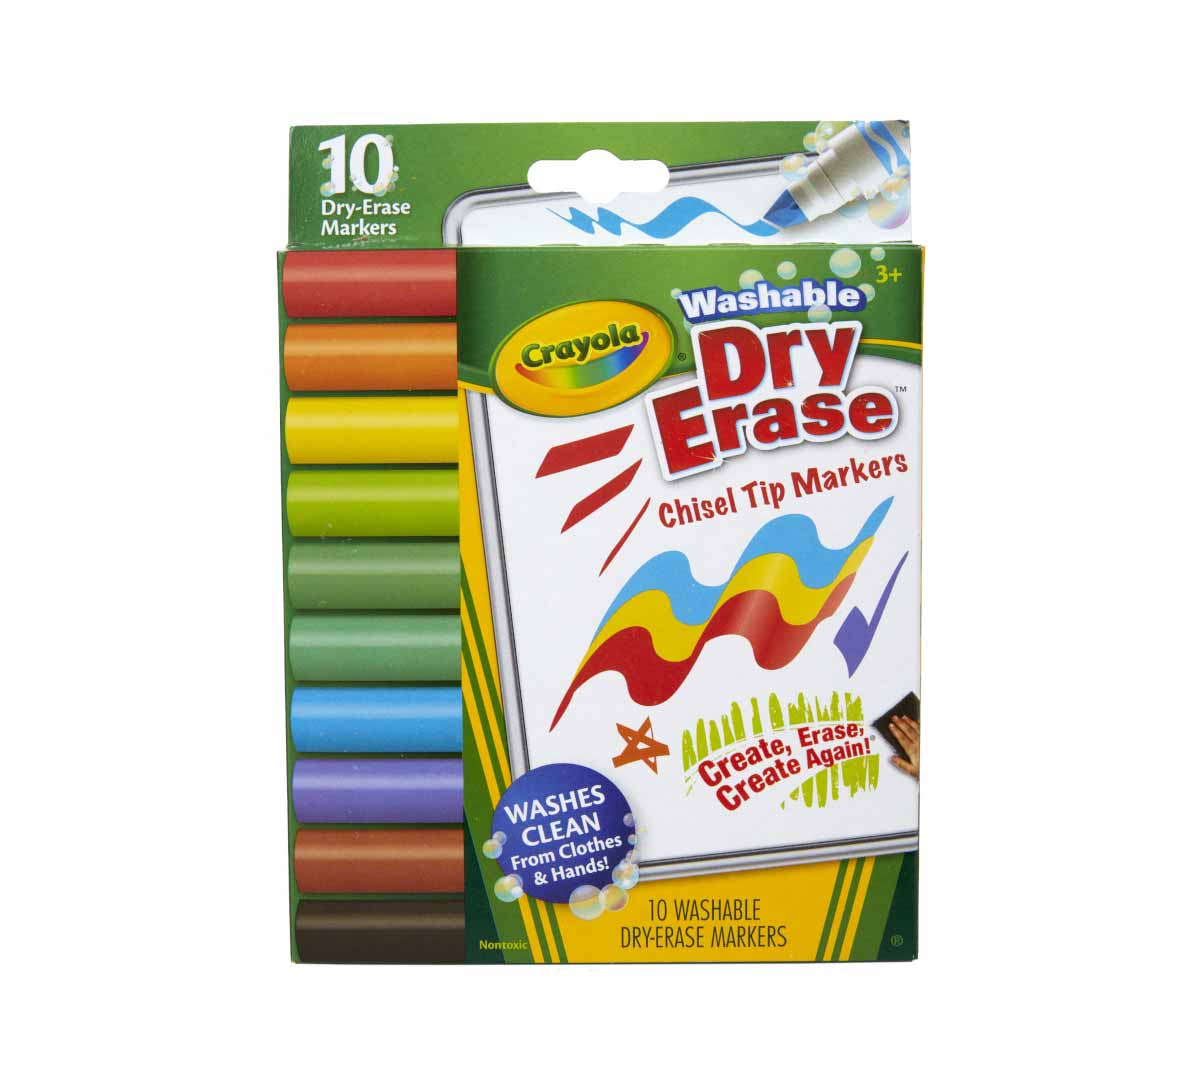 Crayola Washable Dry Erase Markers - Fine Line, Crayola.com